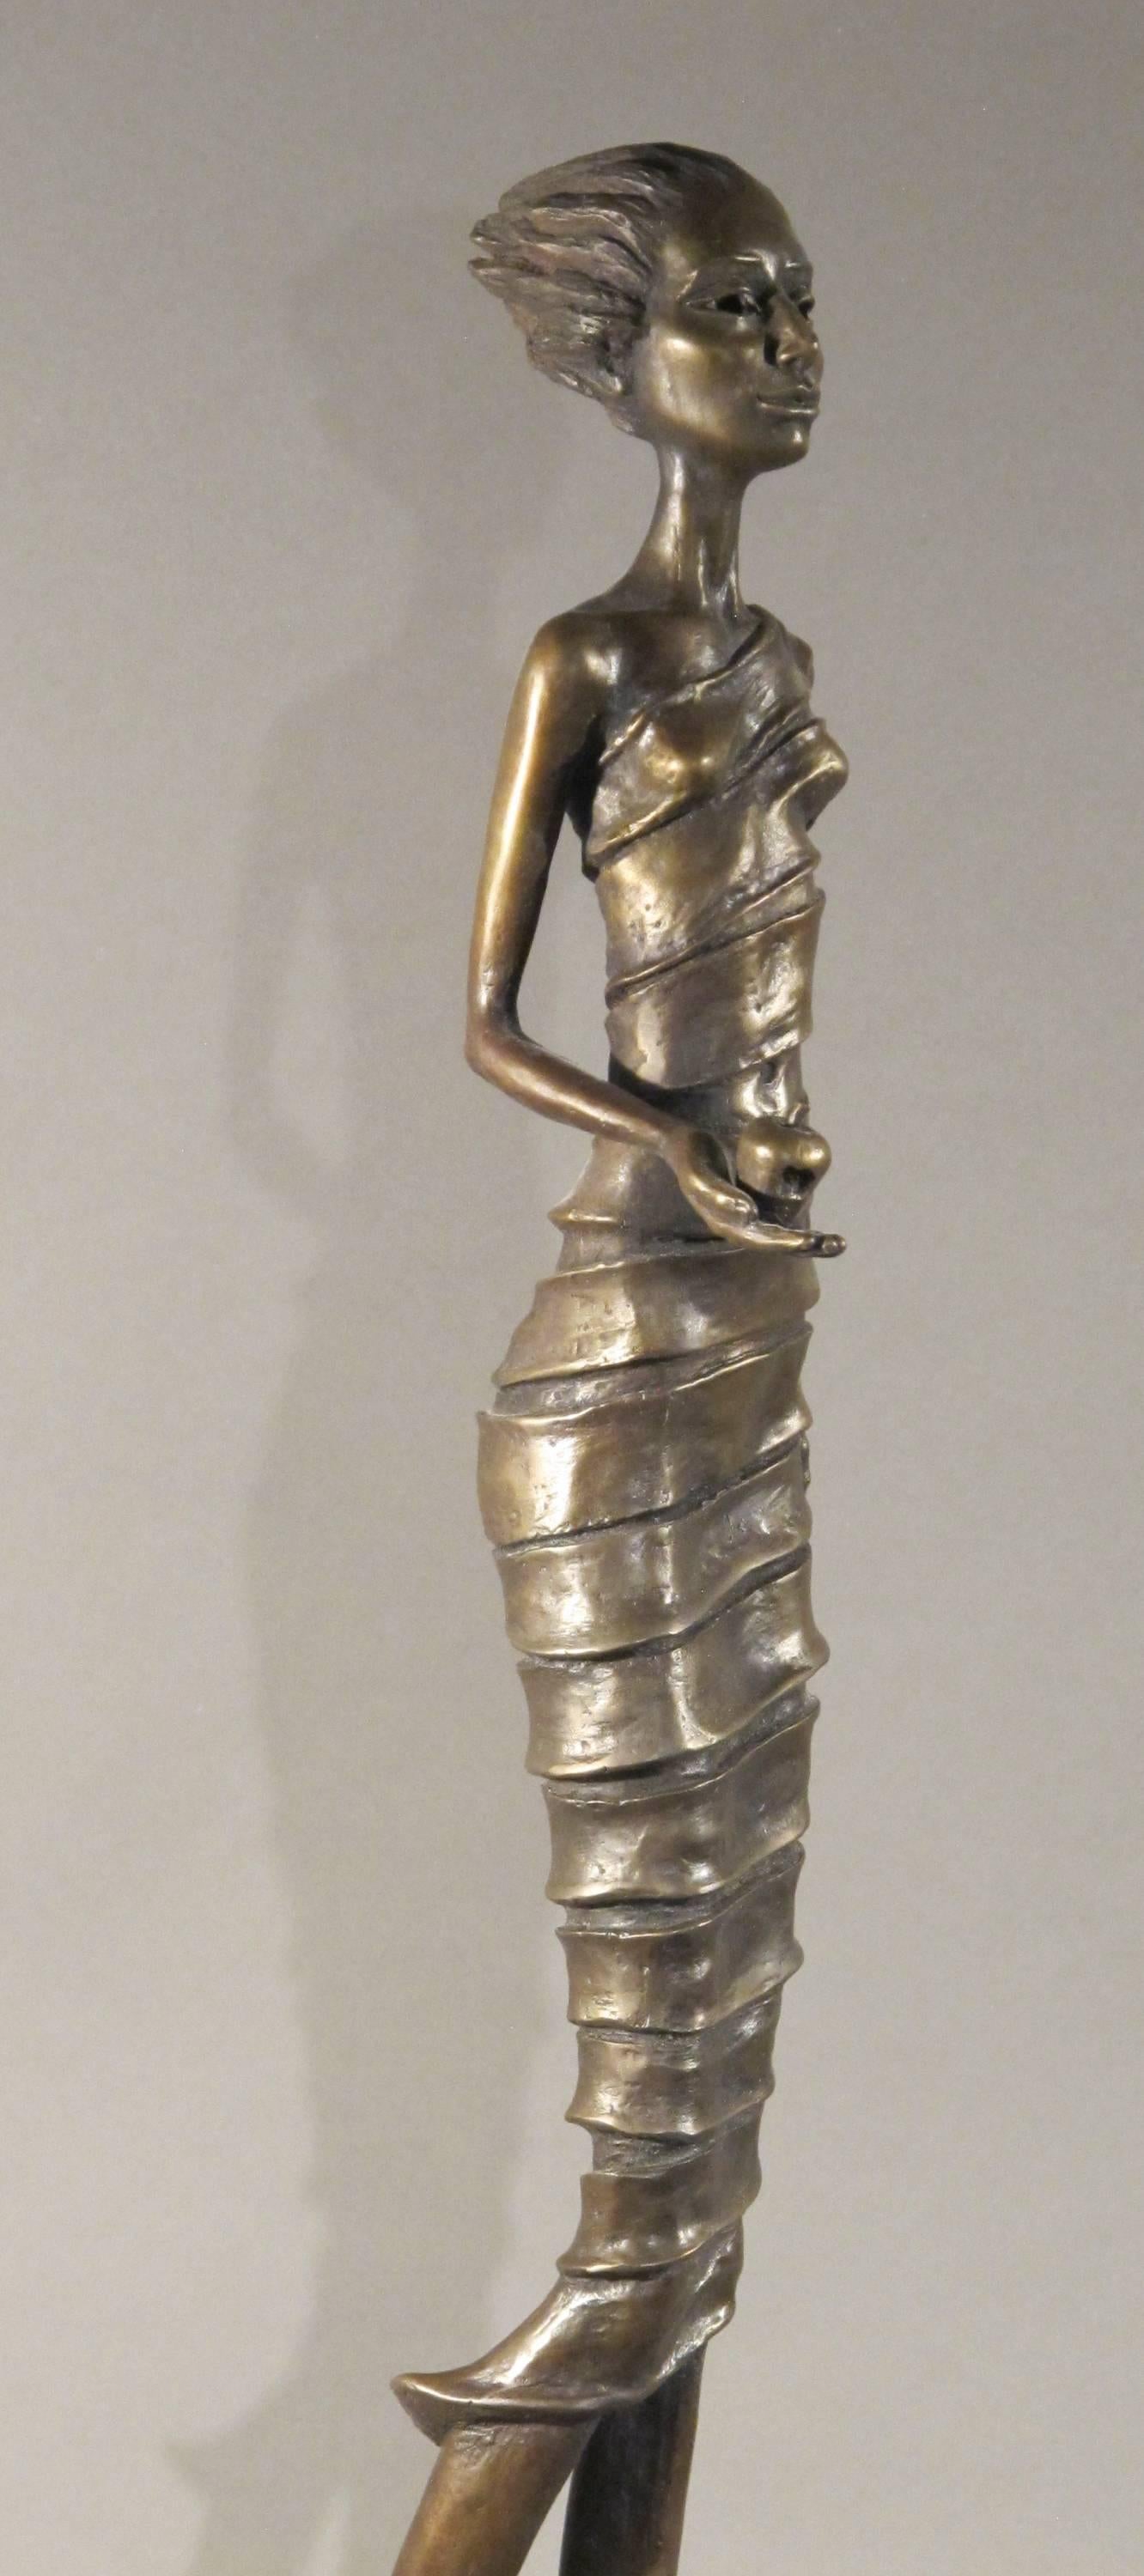 First Bite, männliche Figur mit Apfel in der Hand, Erwachsene von Eden, Bronzeskulptur Williams (Zeitgenössisch), Mixed Media Art, von Troy Williams